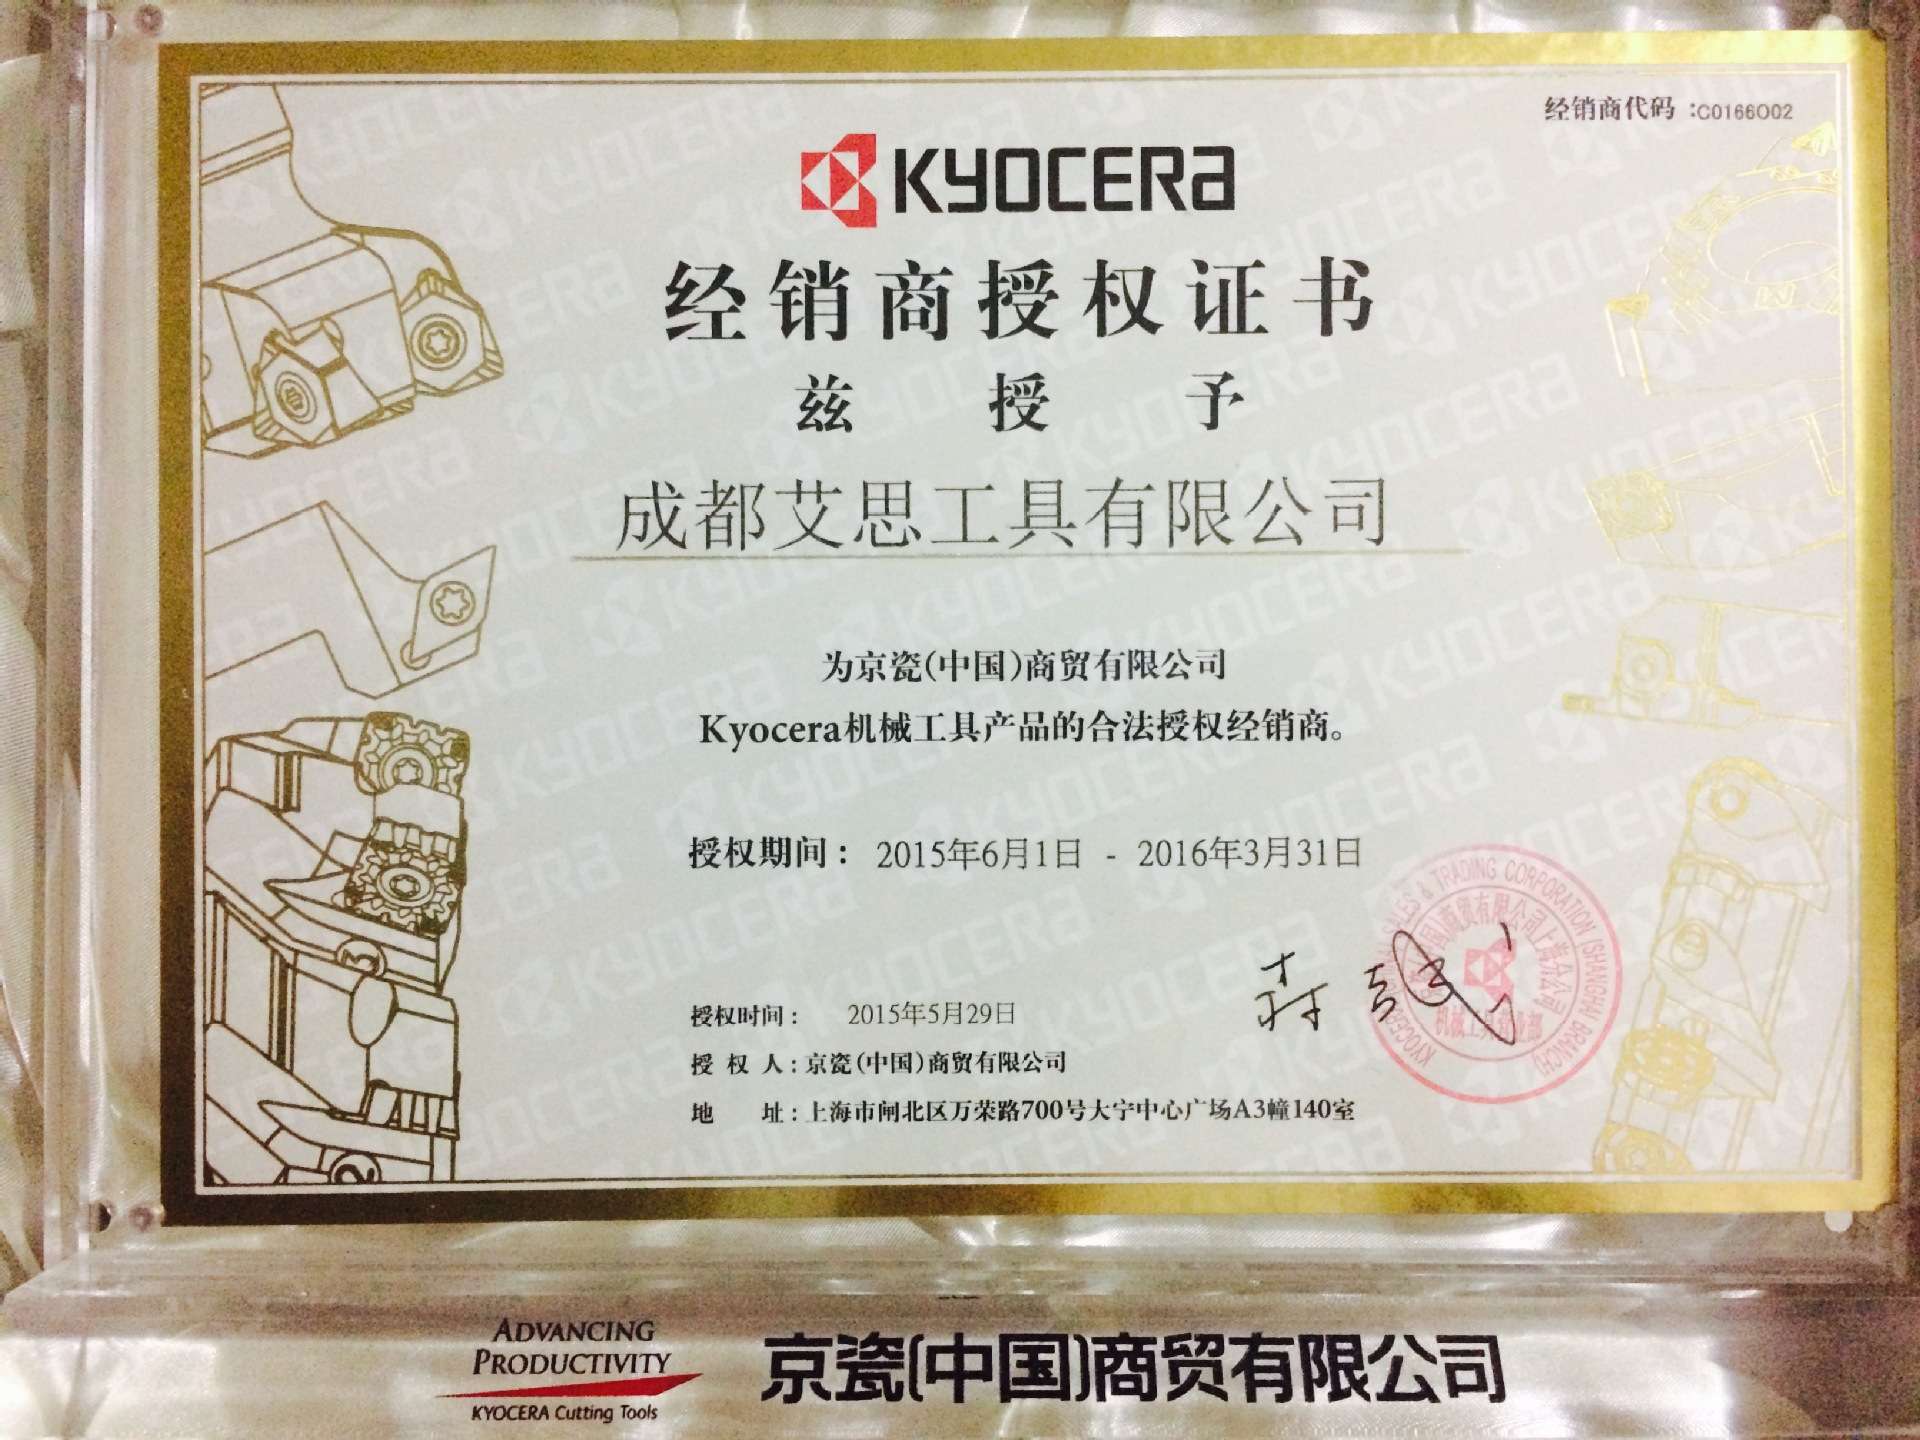 成都艾思工具有限公司正式成为日本京瓷kyocera西南地区授权经销商